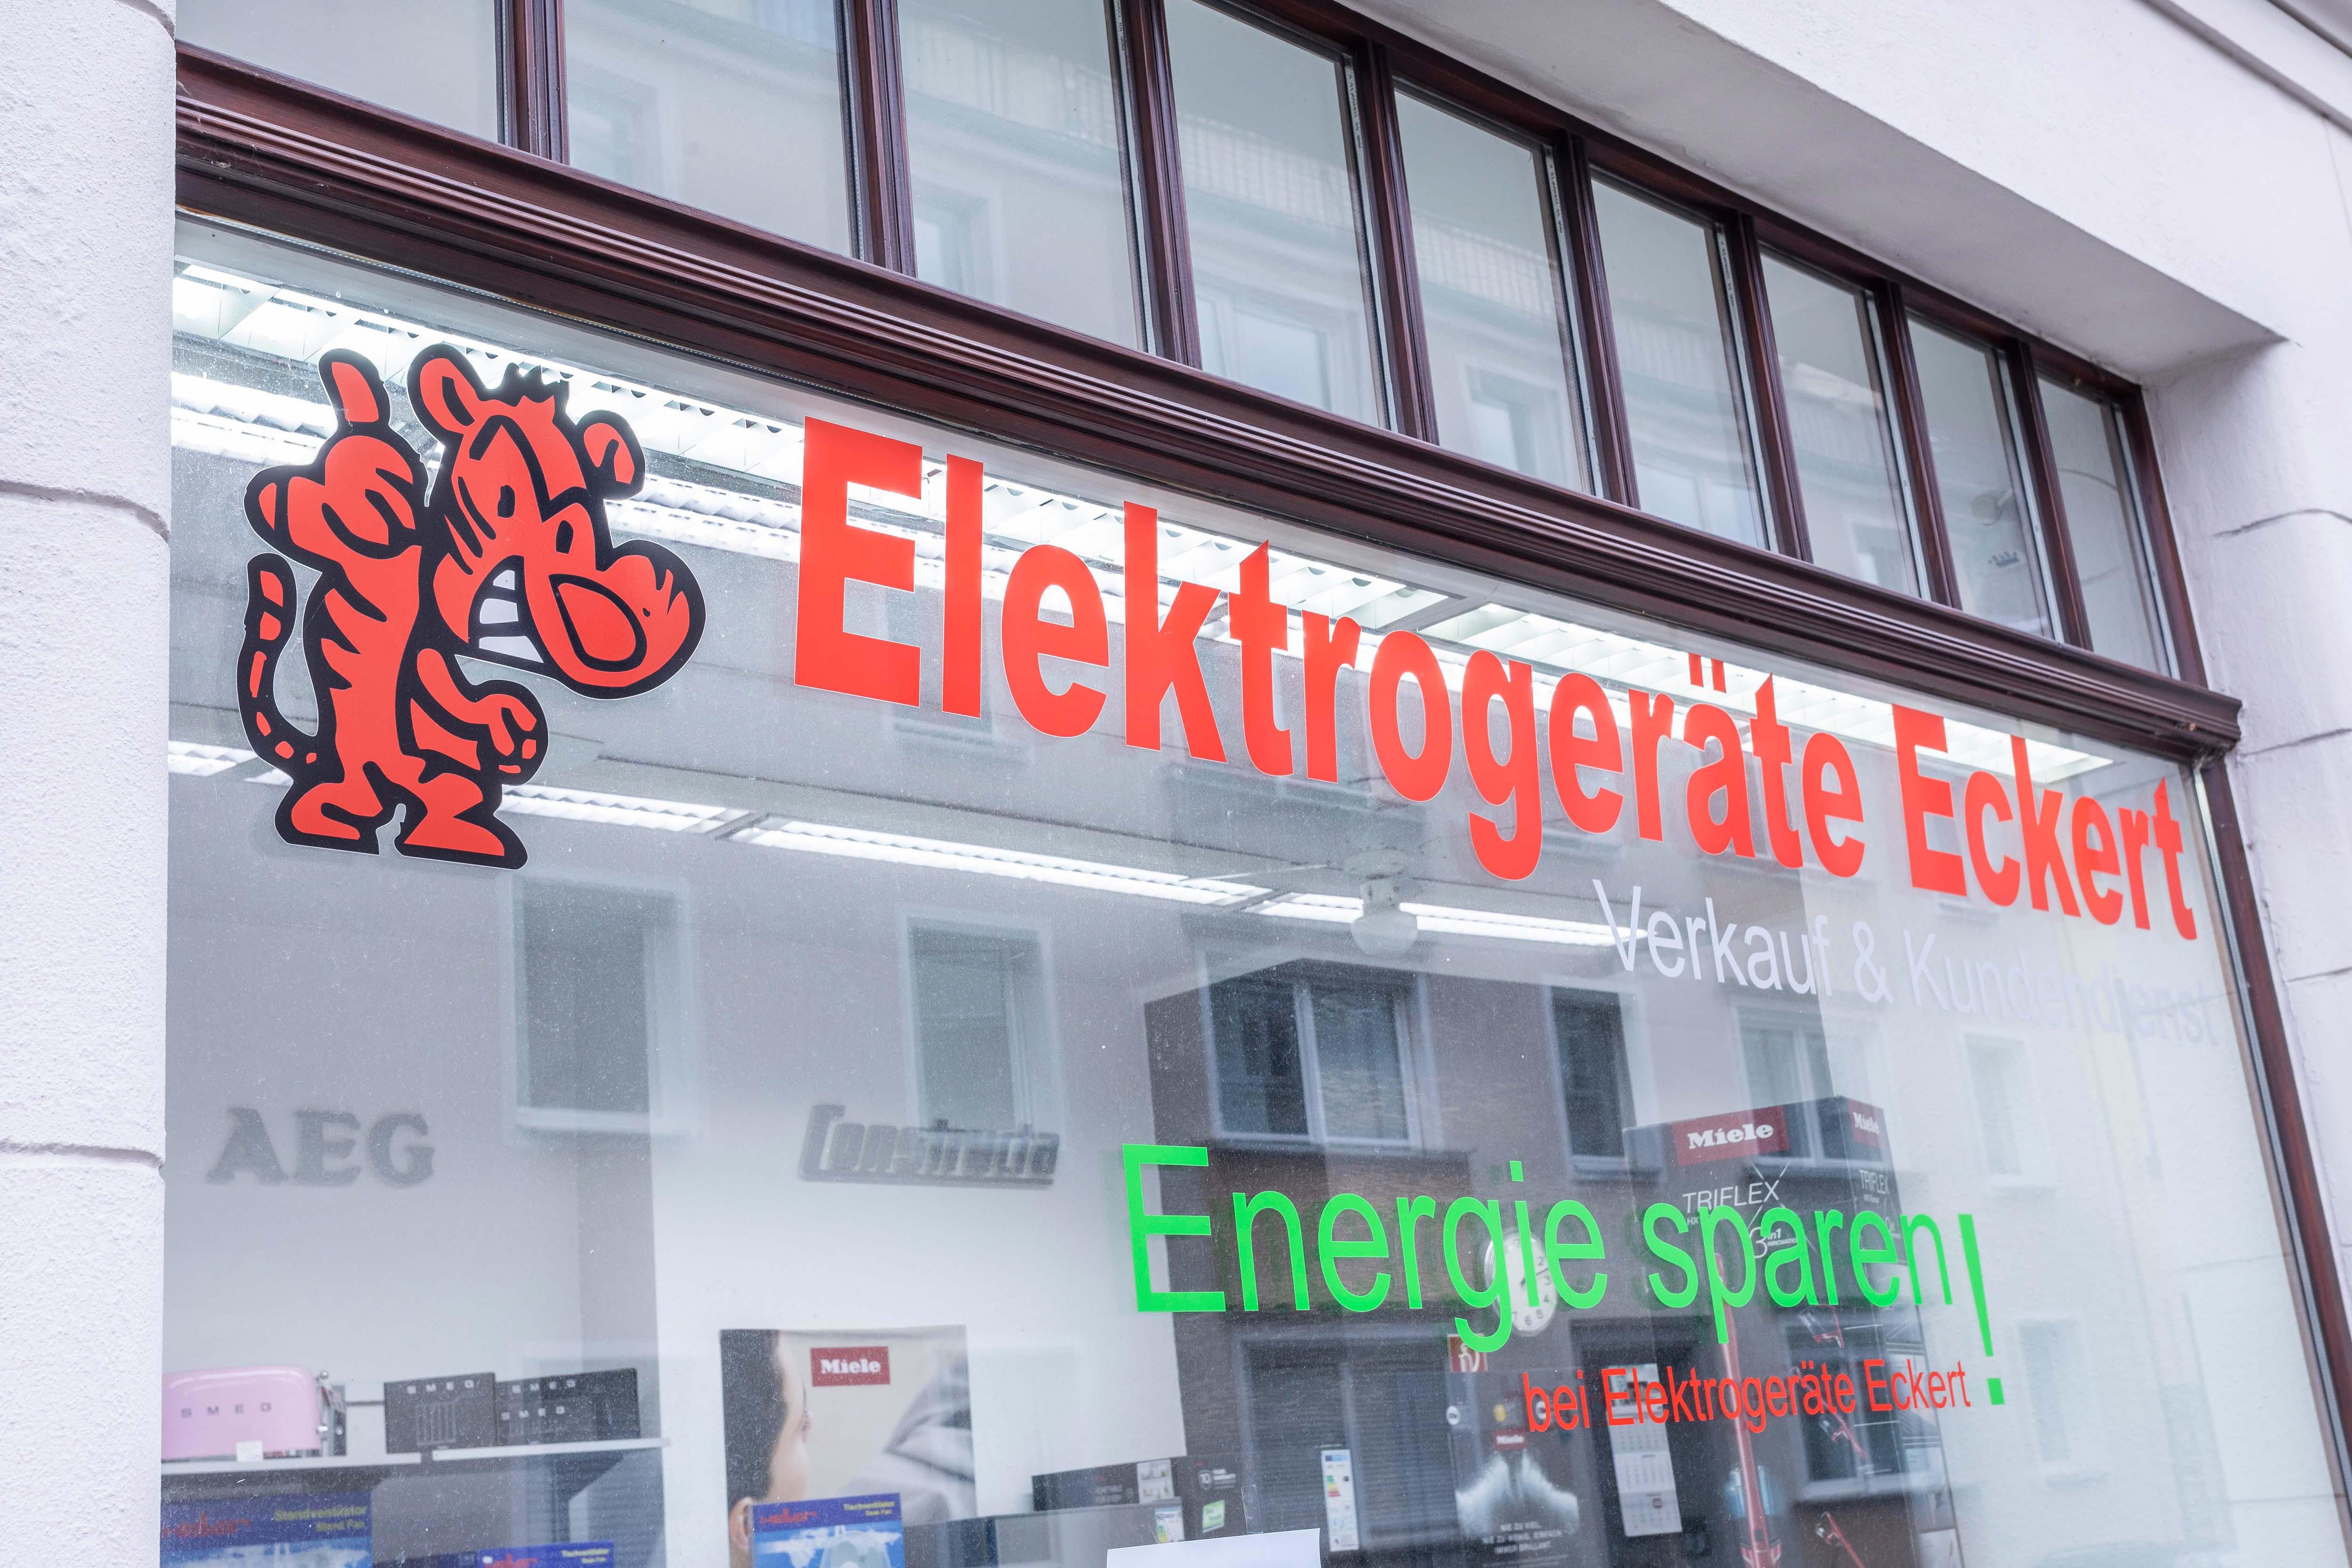 Elektrogeräte Eckert Köln